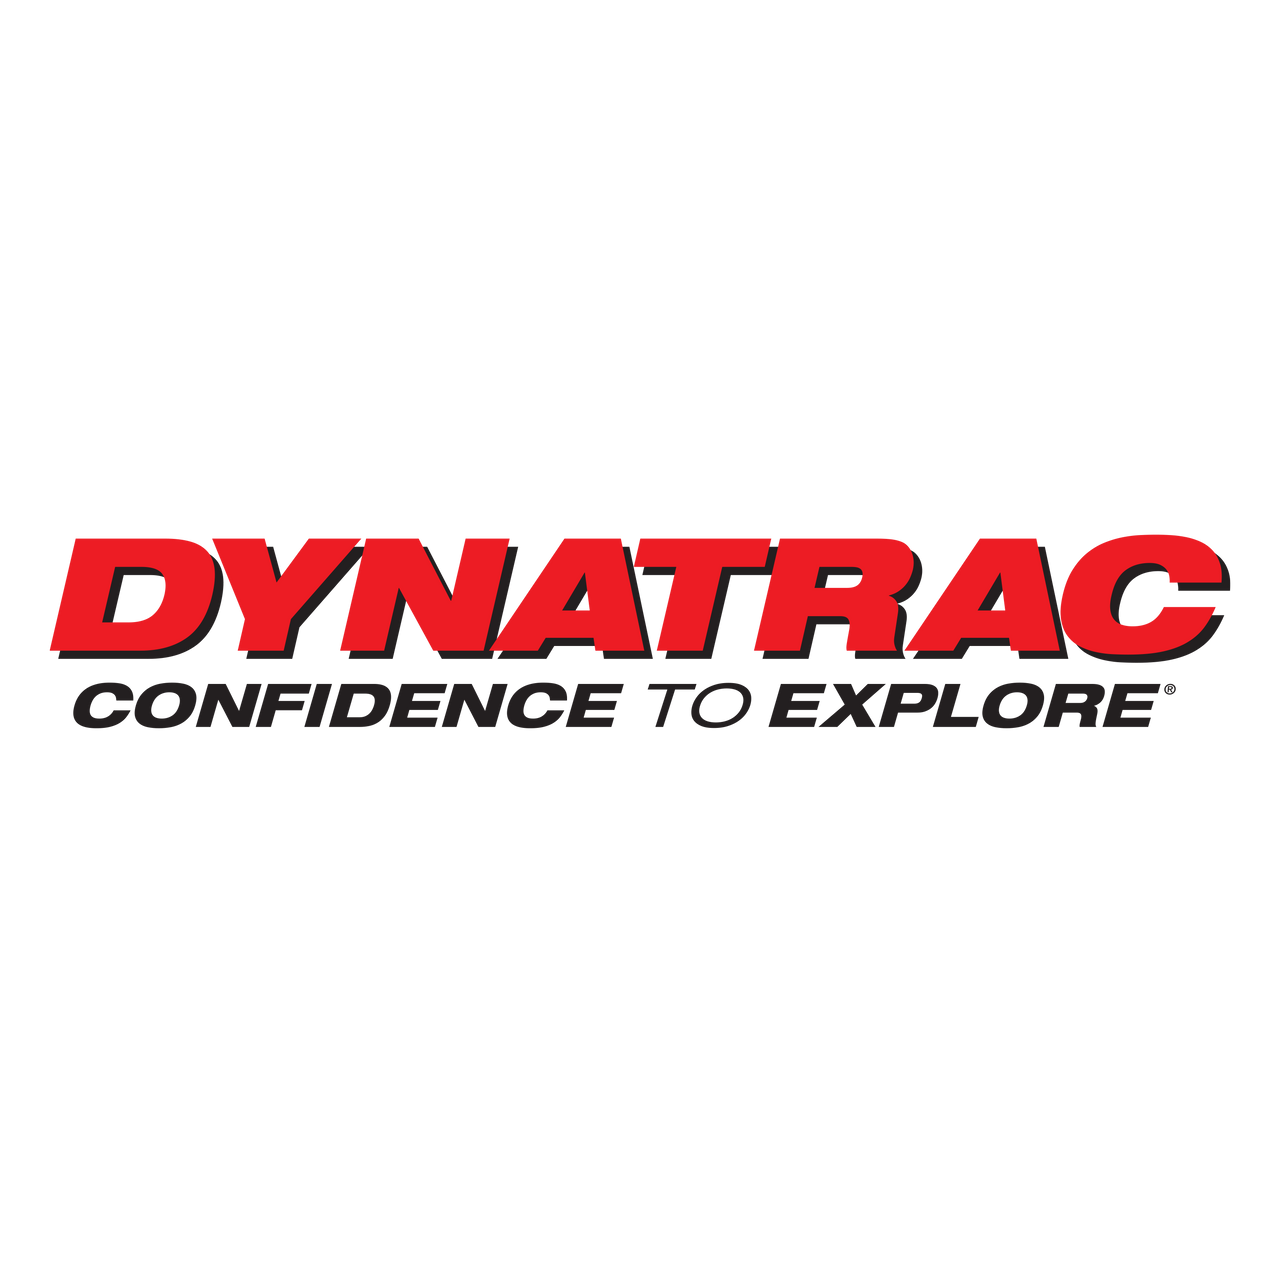 Dynatrac Free-Spin Kit, 1999-04 Ford F250/F350, w/DynaLoc Hubs, Coarse Studs